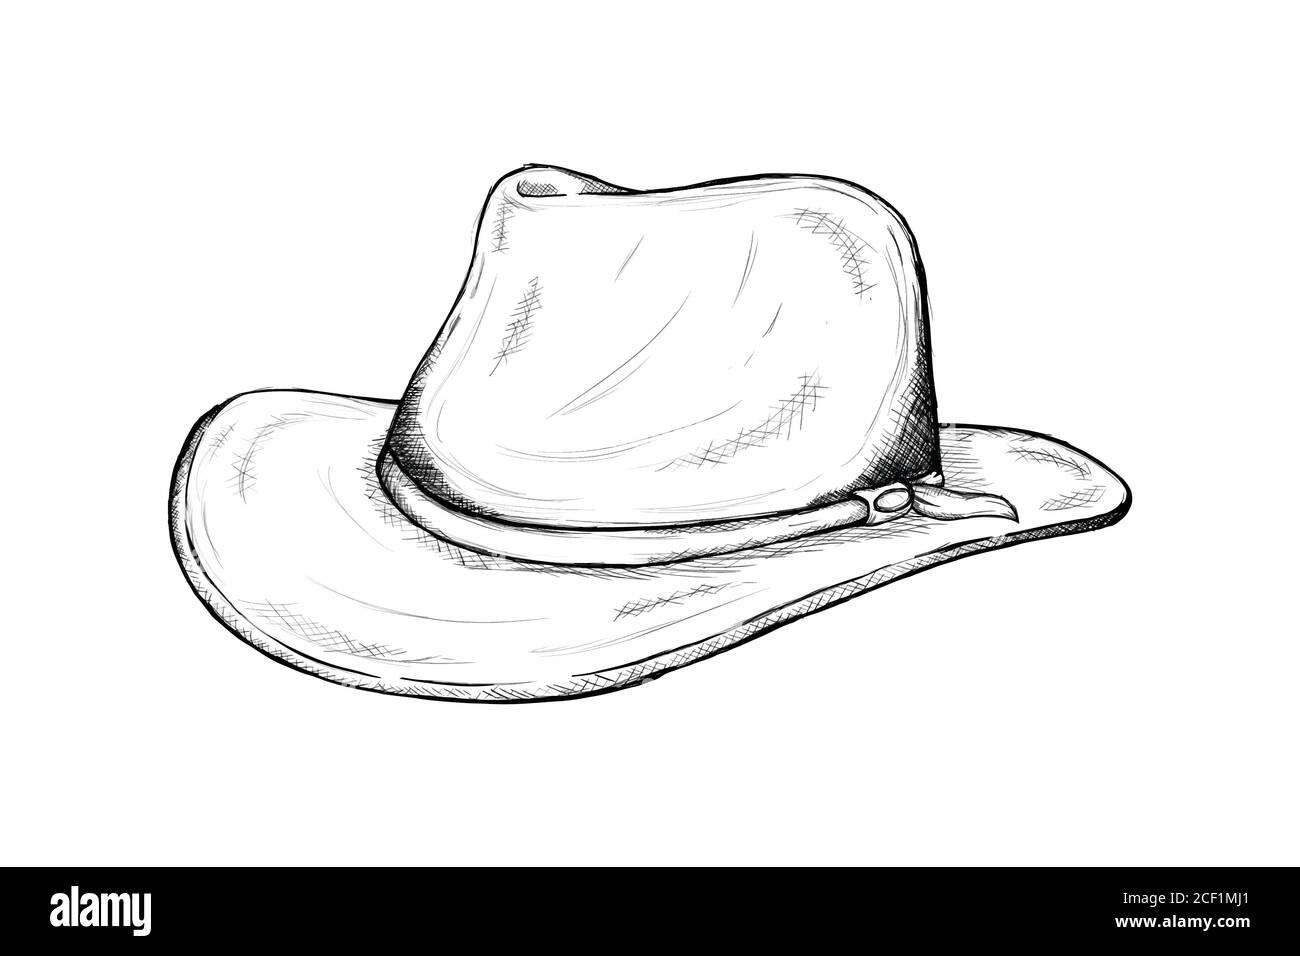 Cowboy sketch Banque d'images détourées - Alamy